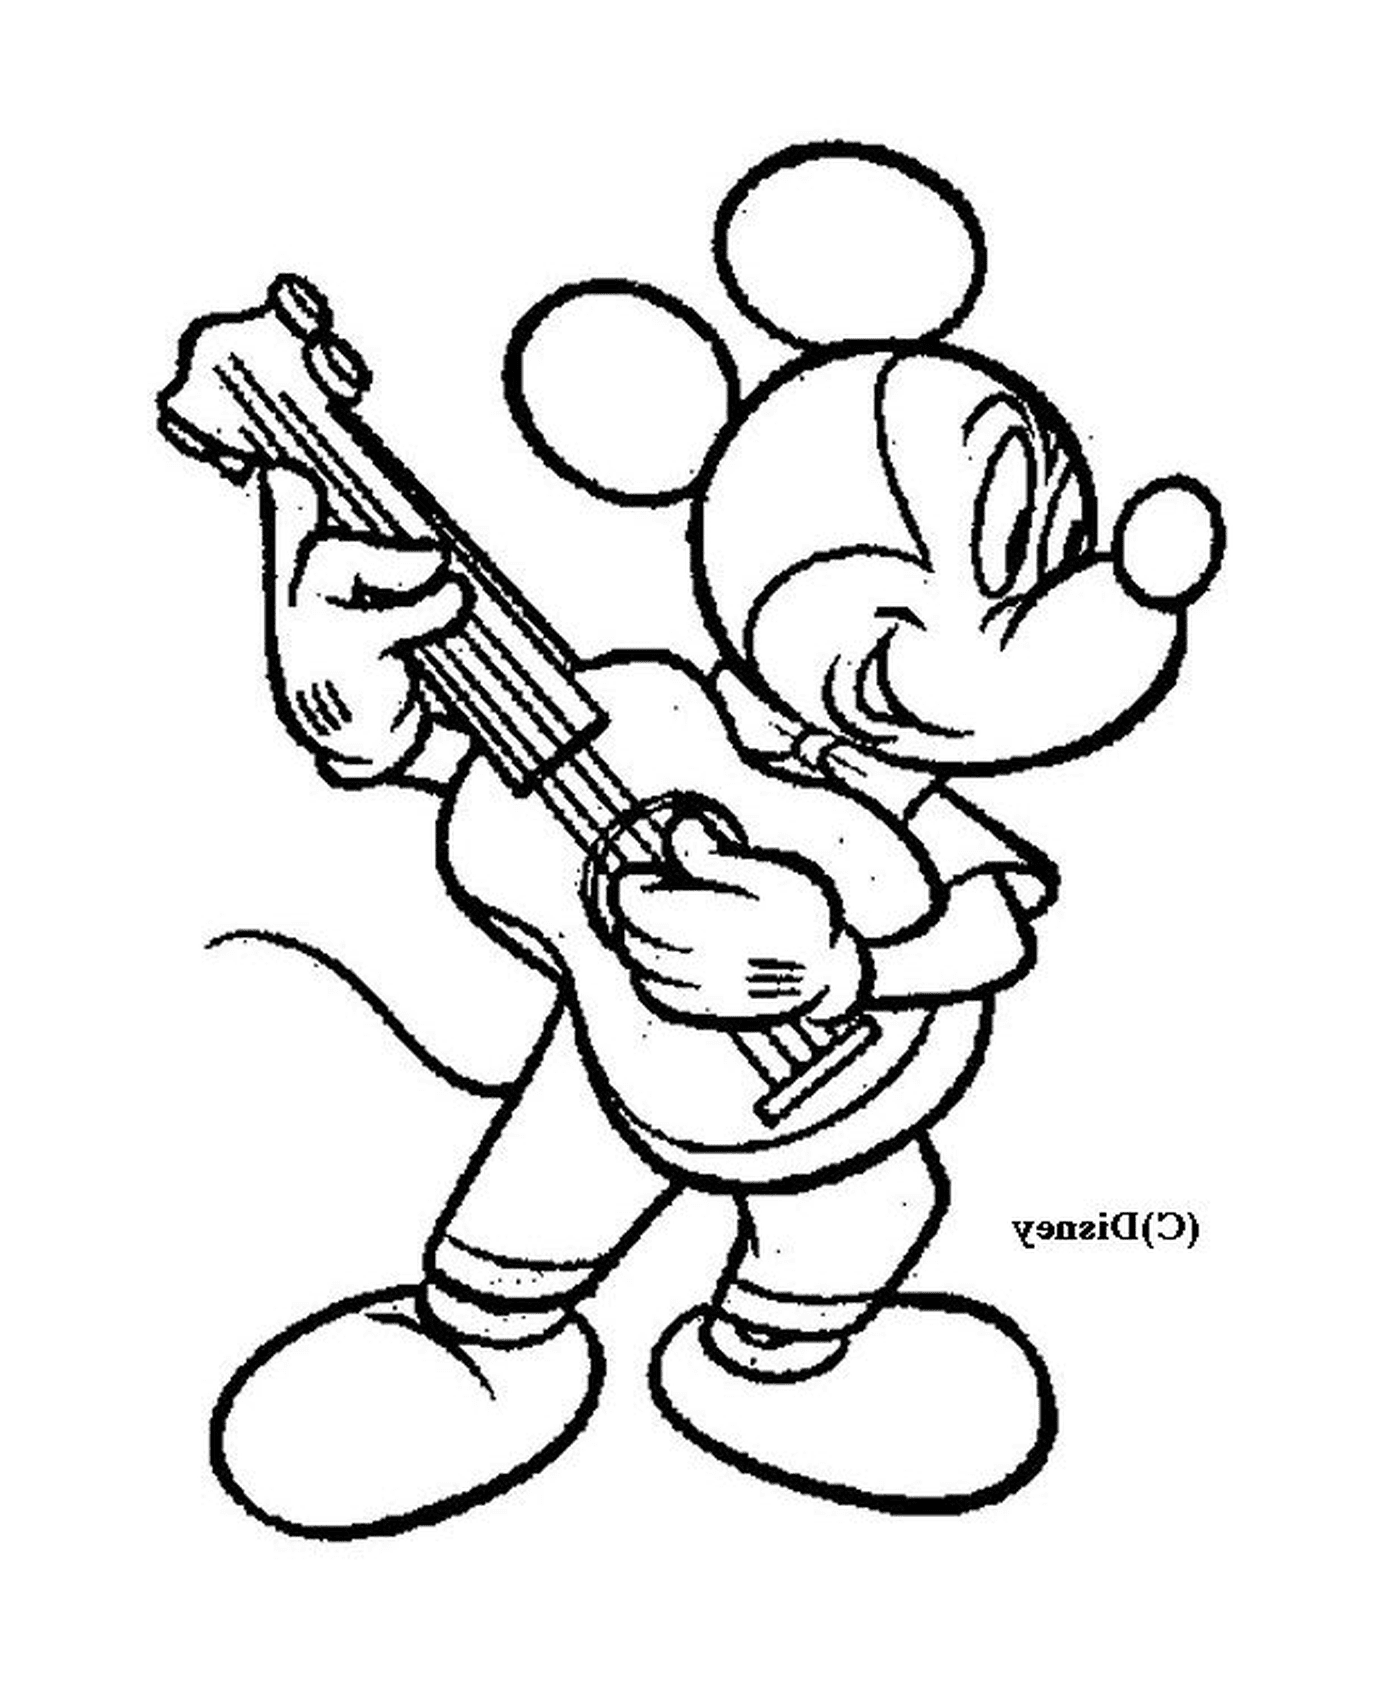  मिकी माउस गिटार बजा रहा है 